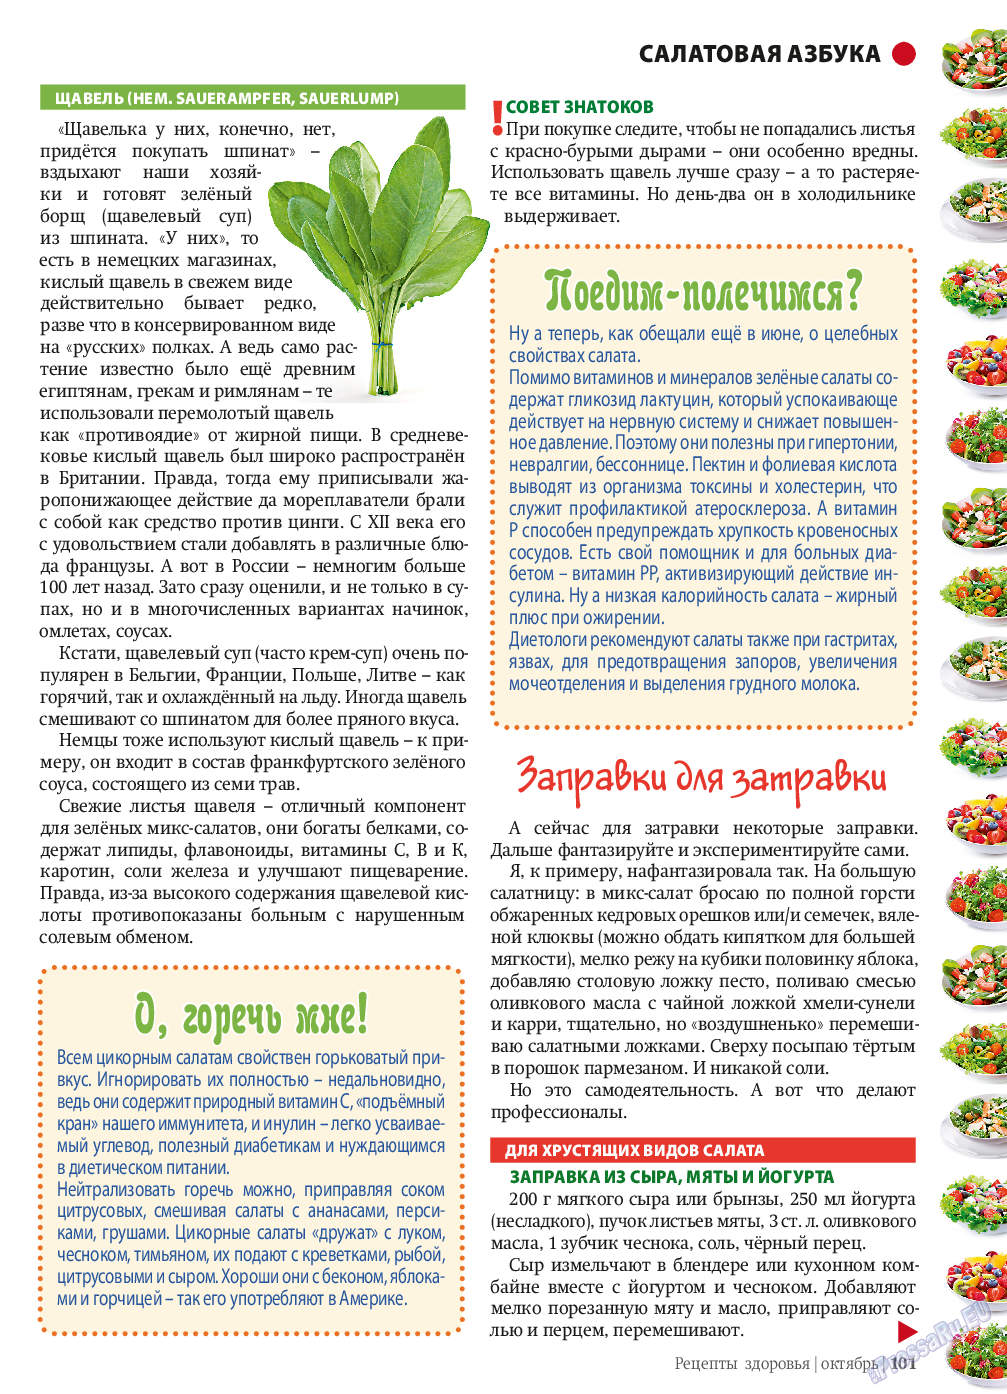 Рецепты здоровья, журнал. 2013 №10 стр.101